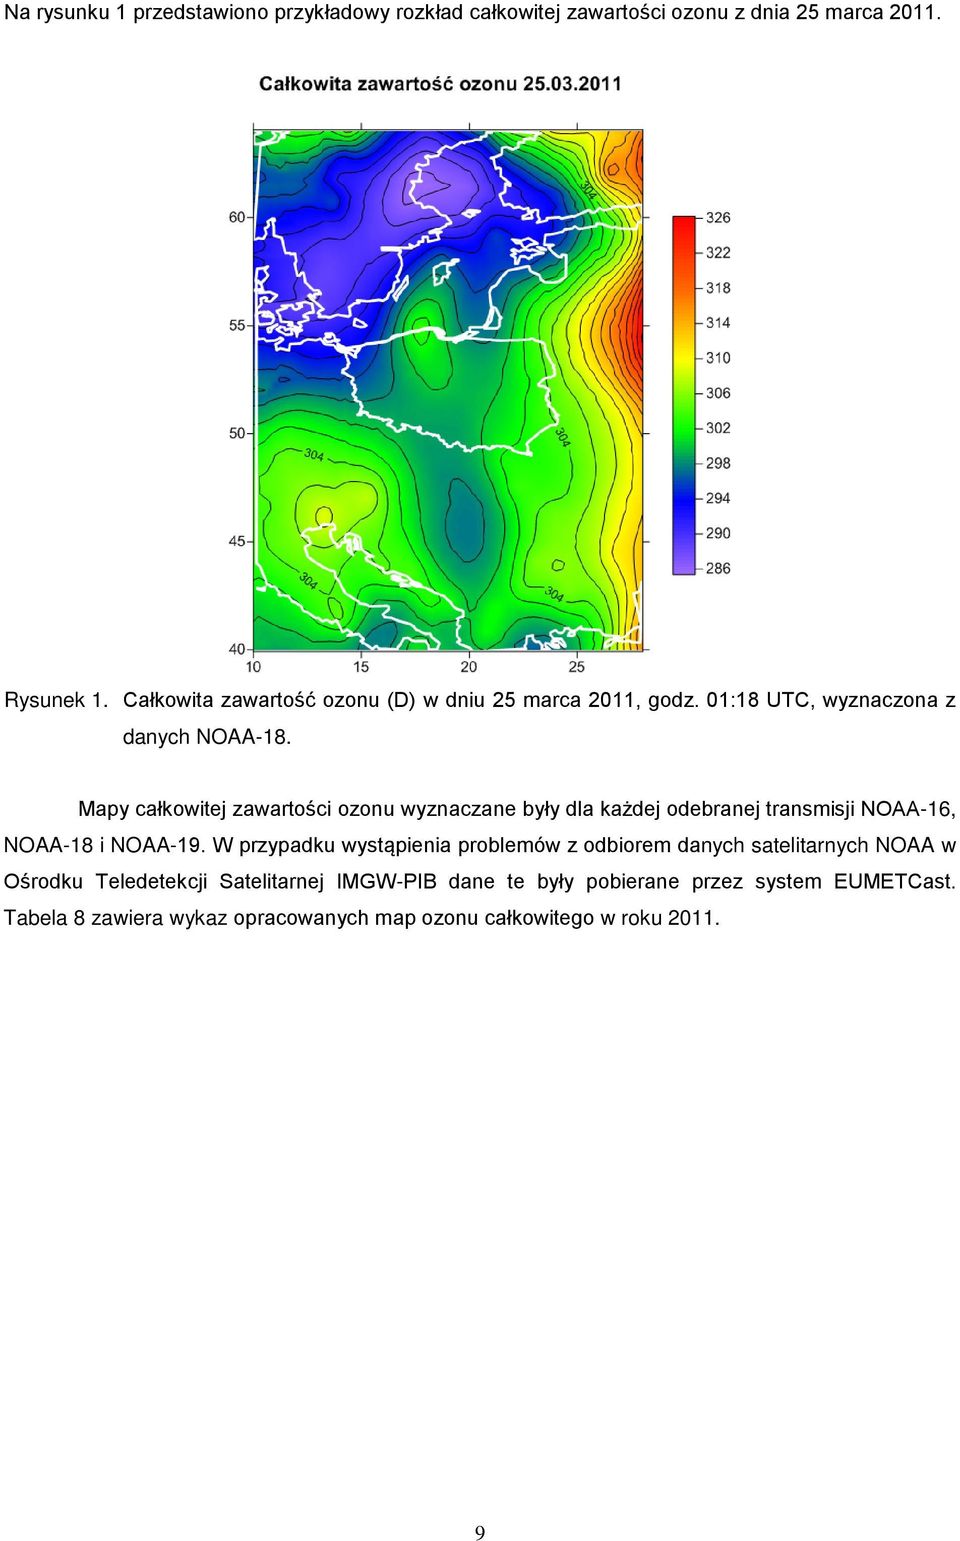 Mapy całkowitej zawartości ozonu wyznaczane były dla każdej odebranej transmisji NOAA-16, NOAA-18 i NOAA-19.